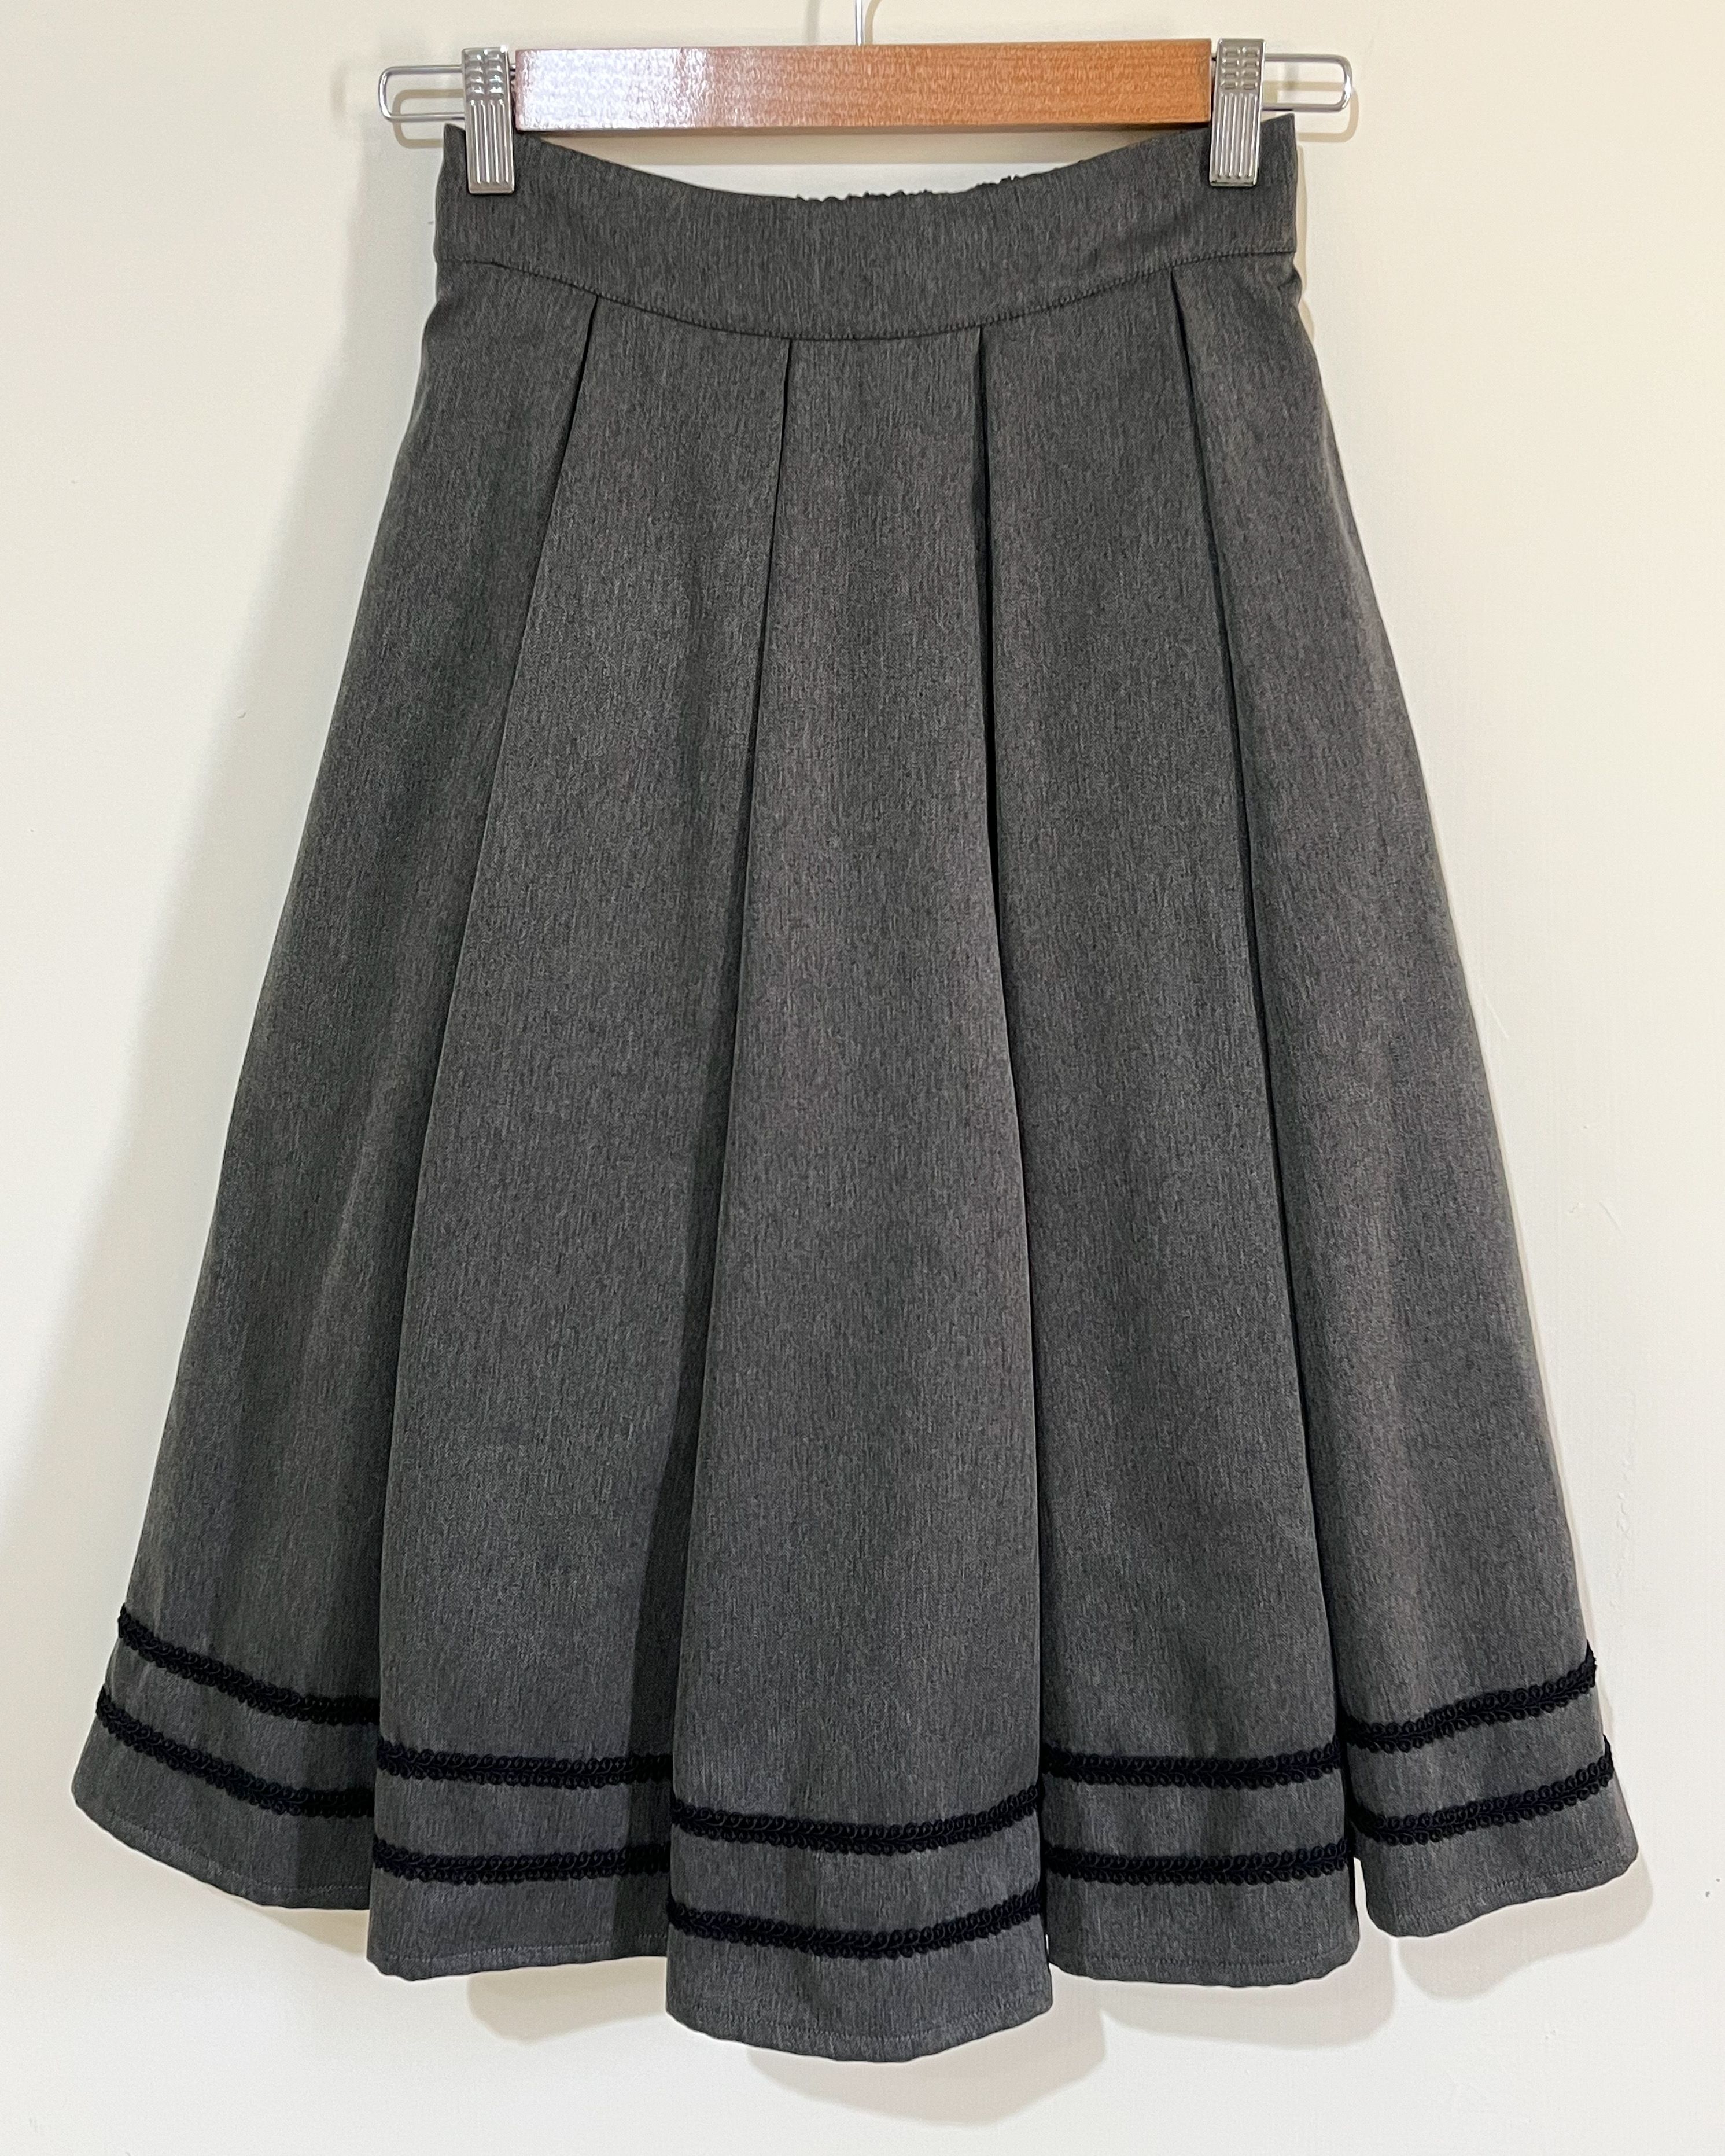 日本 Innocent World 灰色中長裙 M號 Double Braid Tuck Skirt